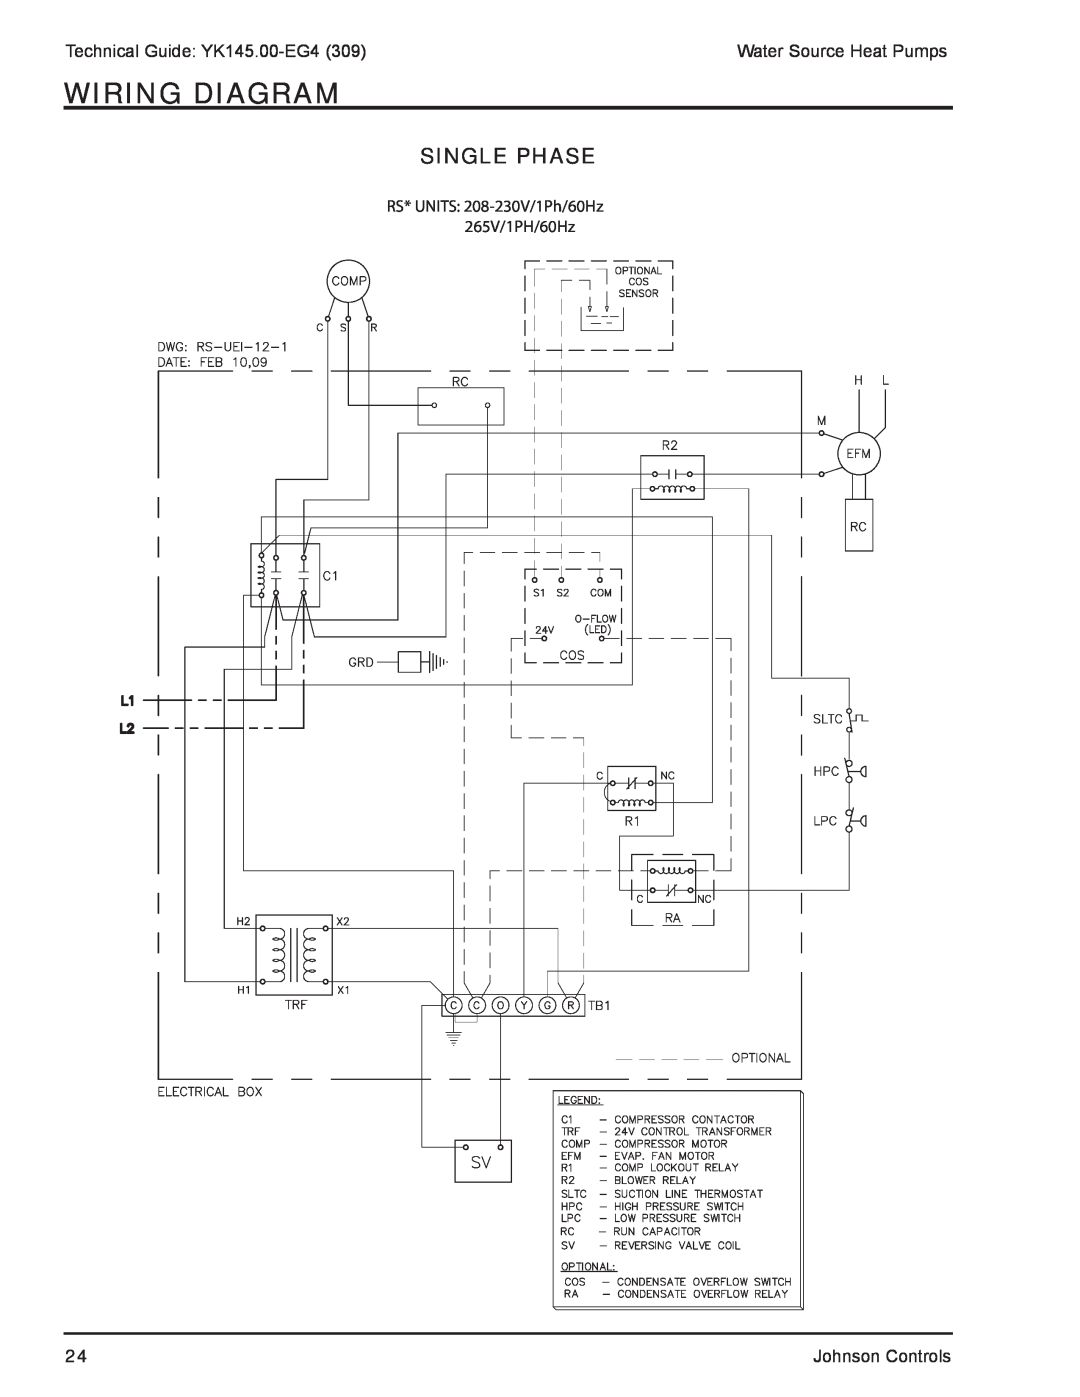 York YK145.00-EG4 manual Wiring Diagram, Single Phase 